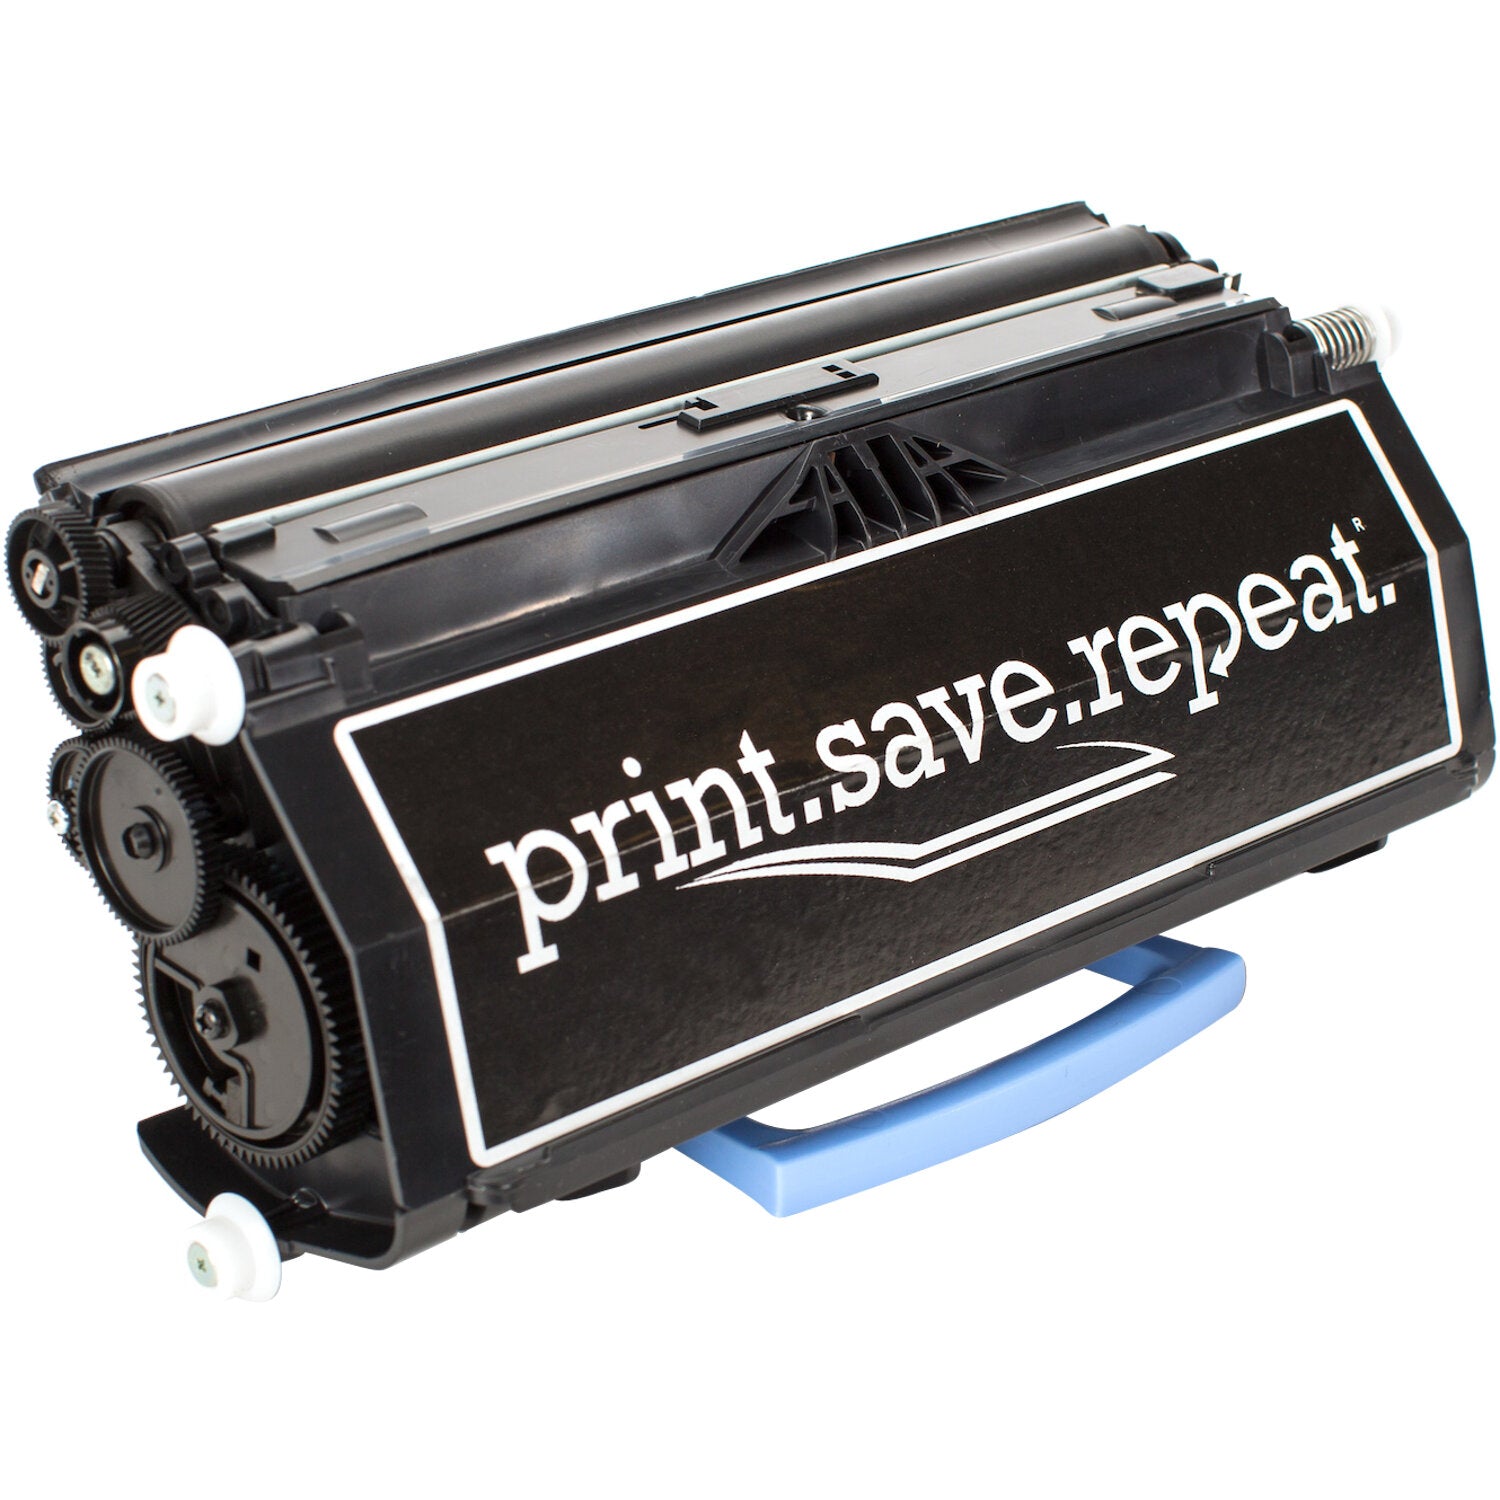 Print.Save.Repeat. Lexmark E260A11A Remanufactured Toner Cartridge for E260, E360, E460, E462 [3,500 Pages]